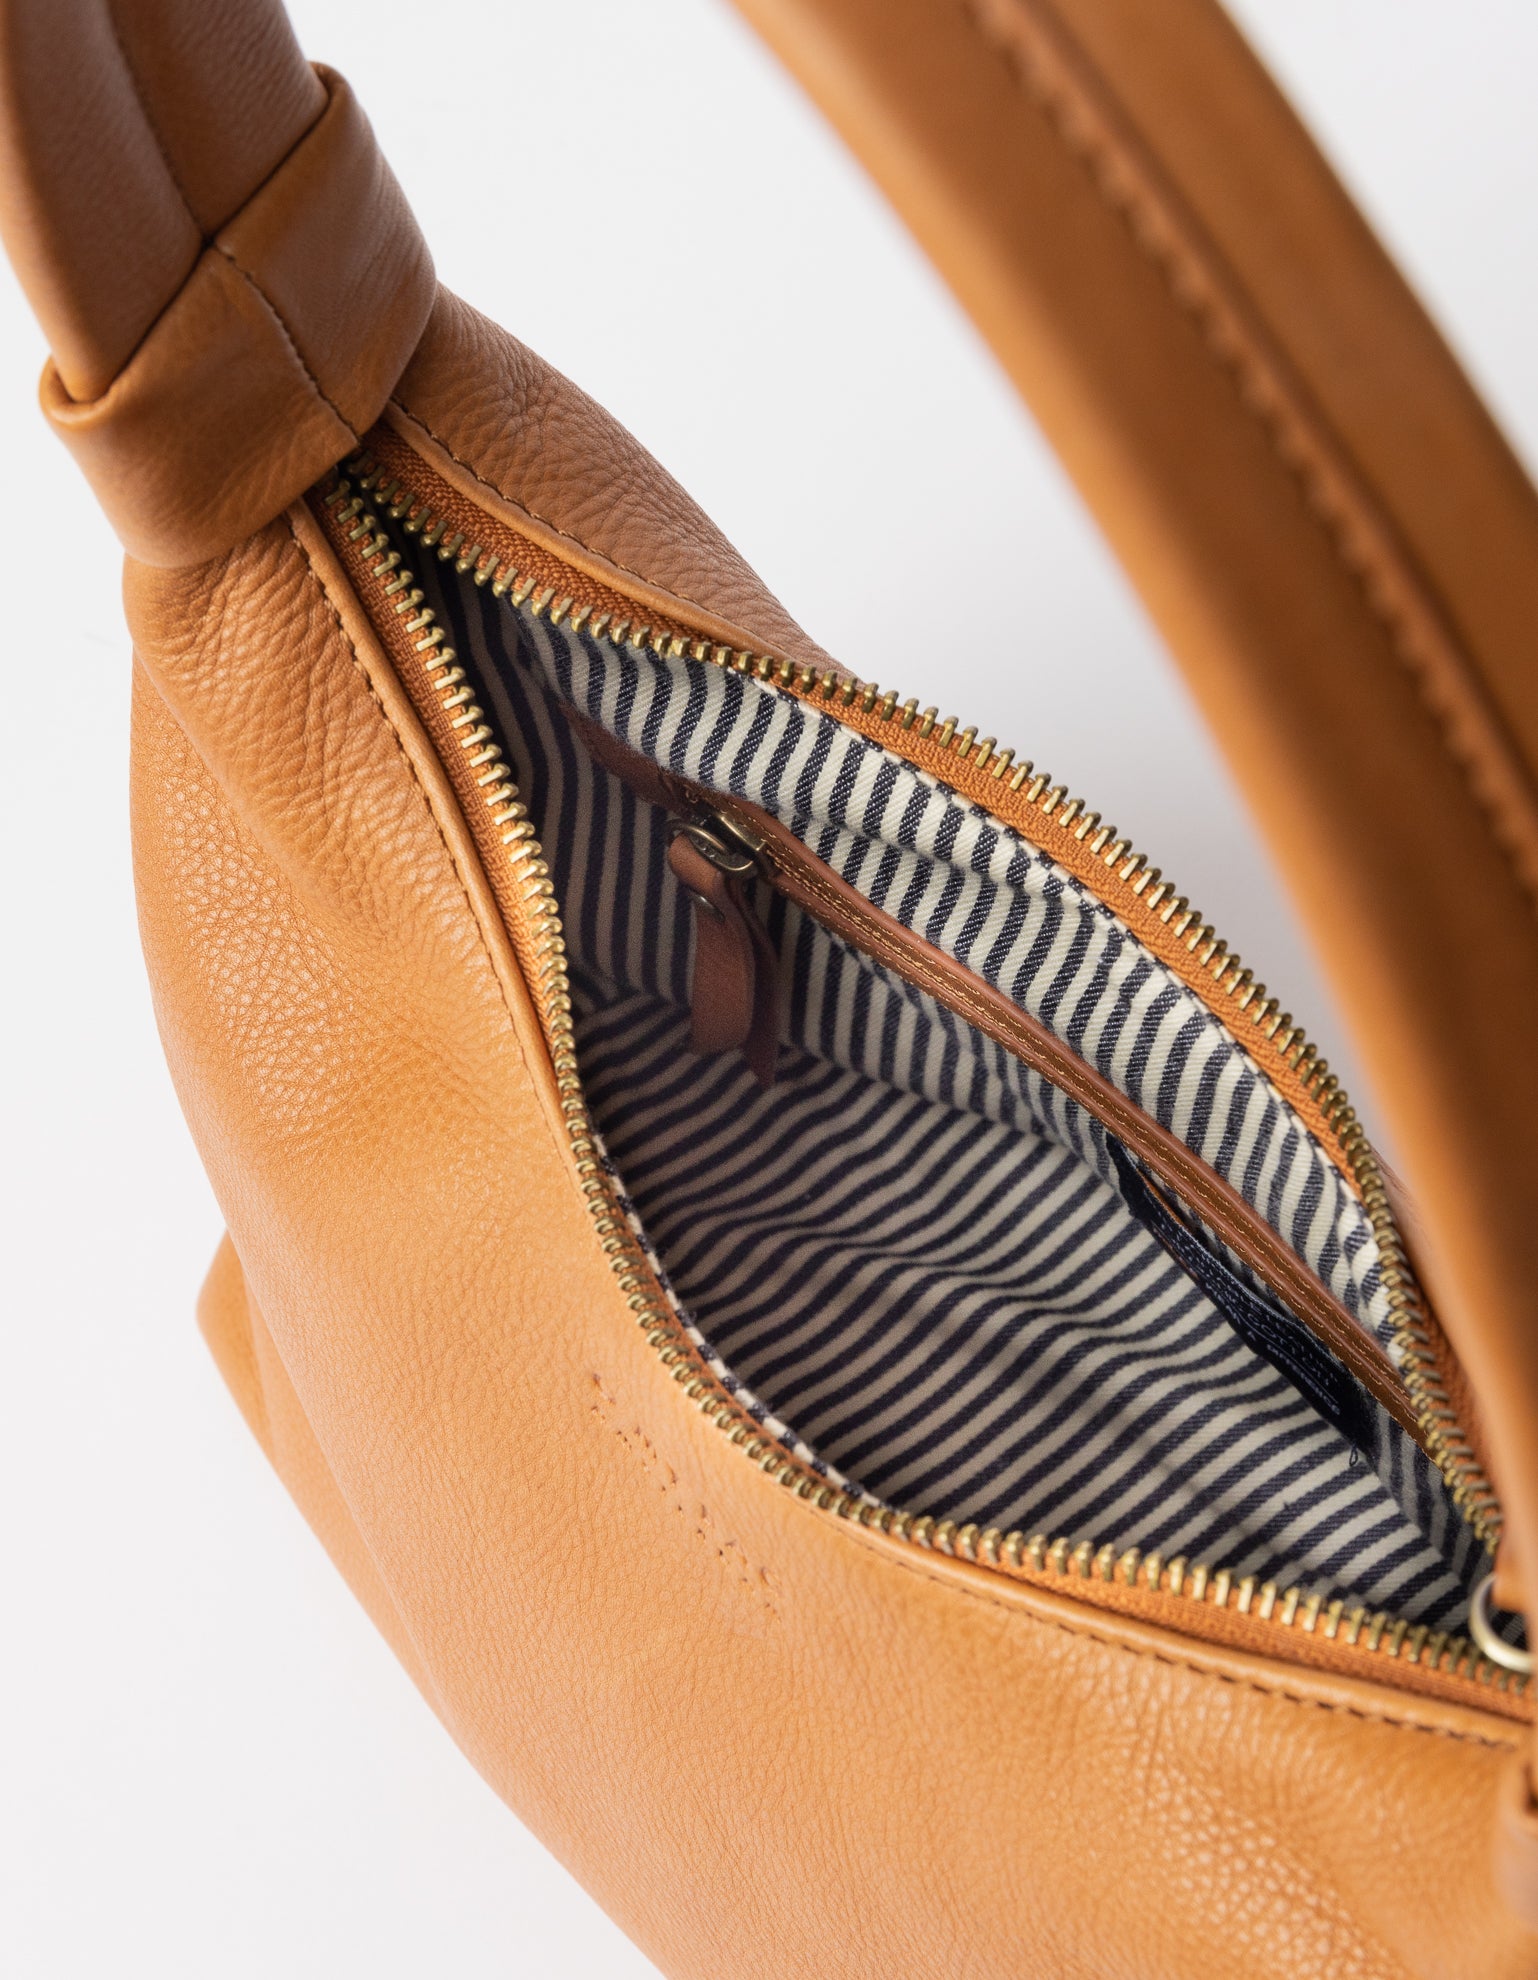 Bell-shaped leather shoulder bag - inside product image